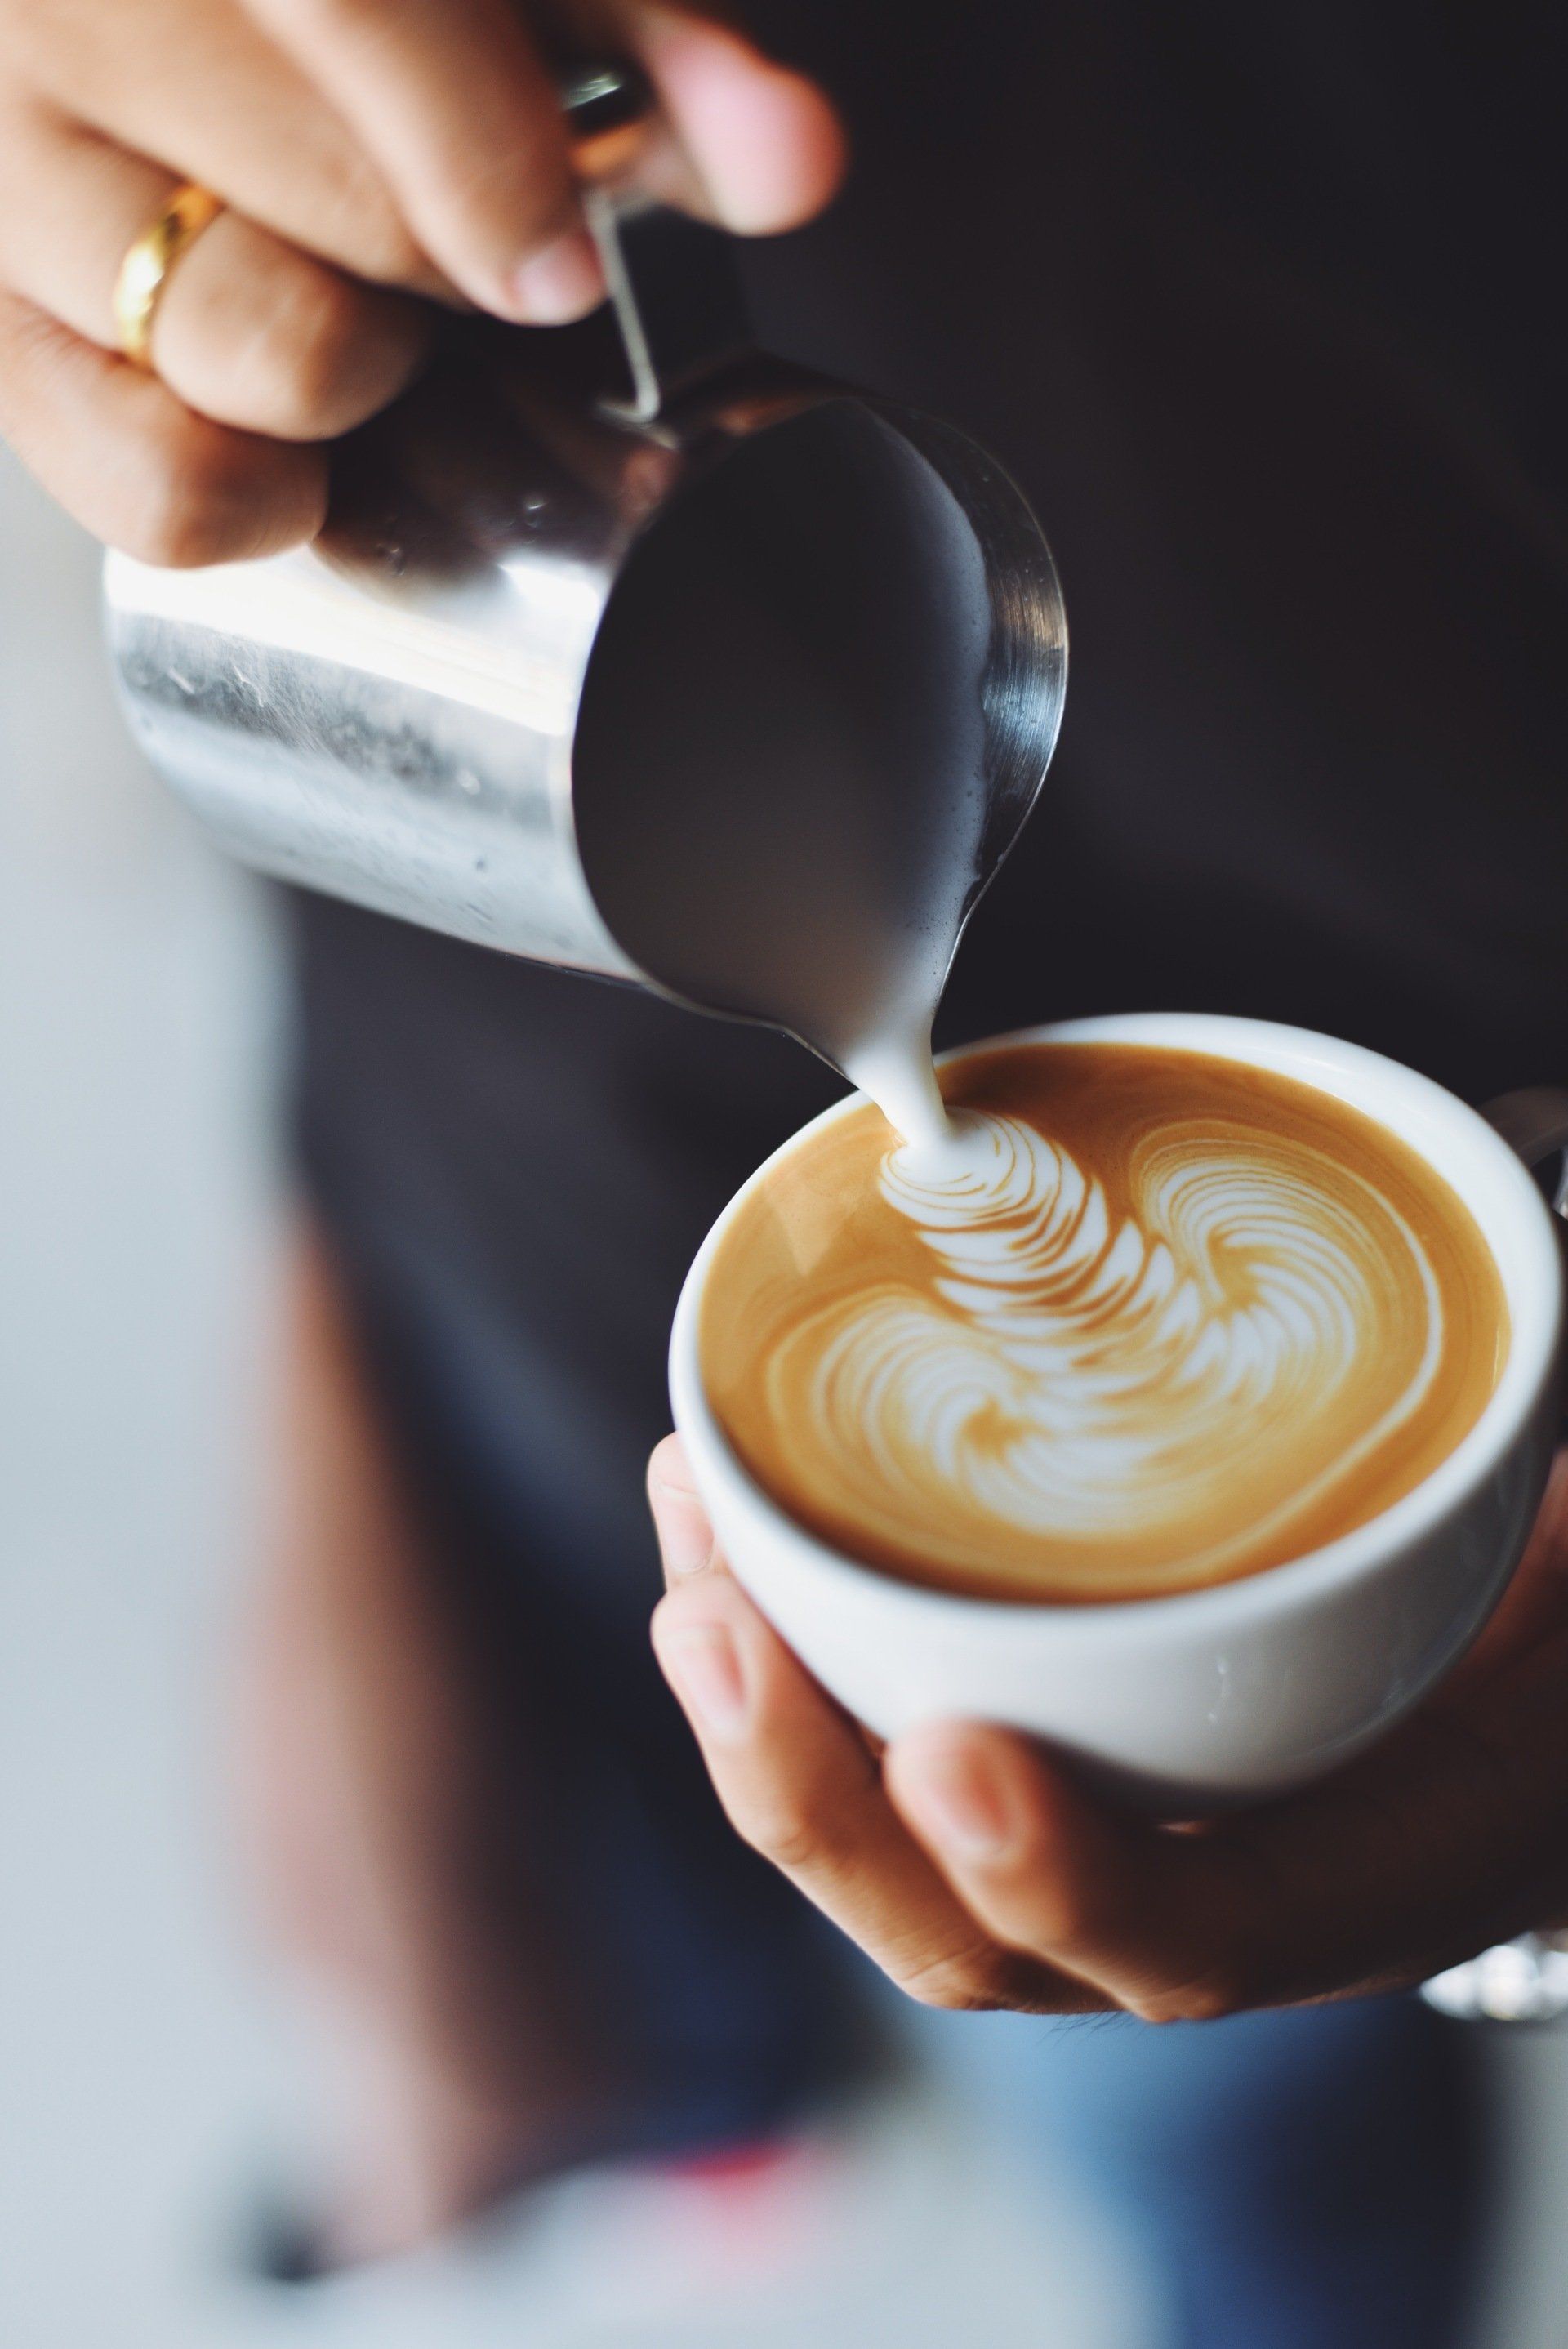 Thuis lekkere koffie zetten? Dit zijn de belangrijke barista benodigdheden!